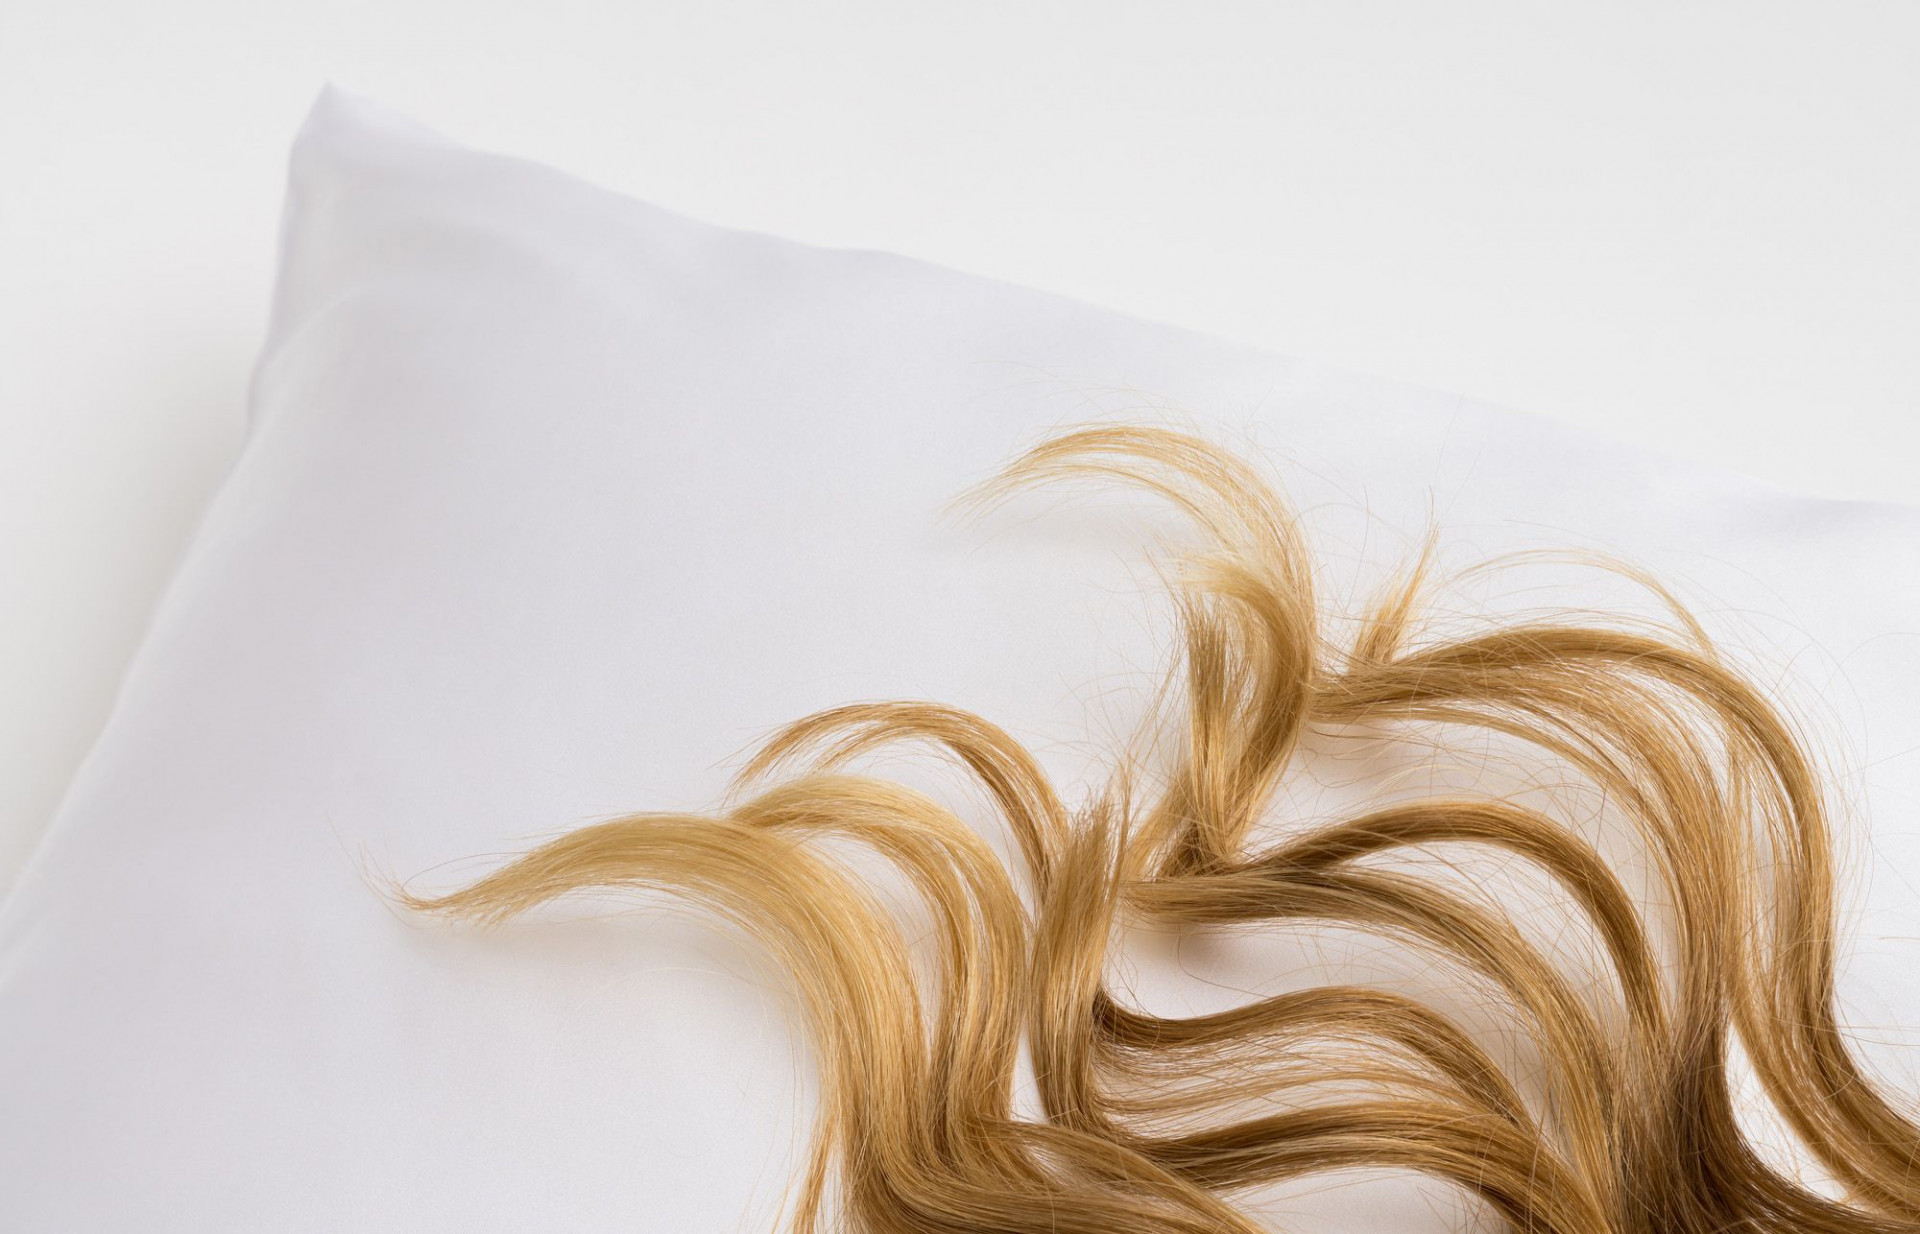 Díky hedvábně hladkému povrchu vlasy méně krepatí a elektrizují.